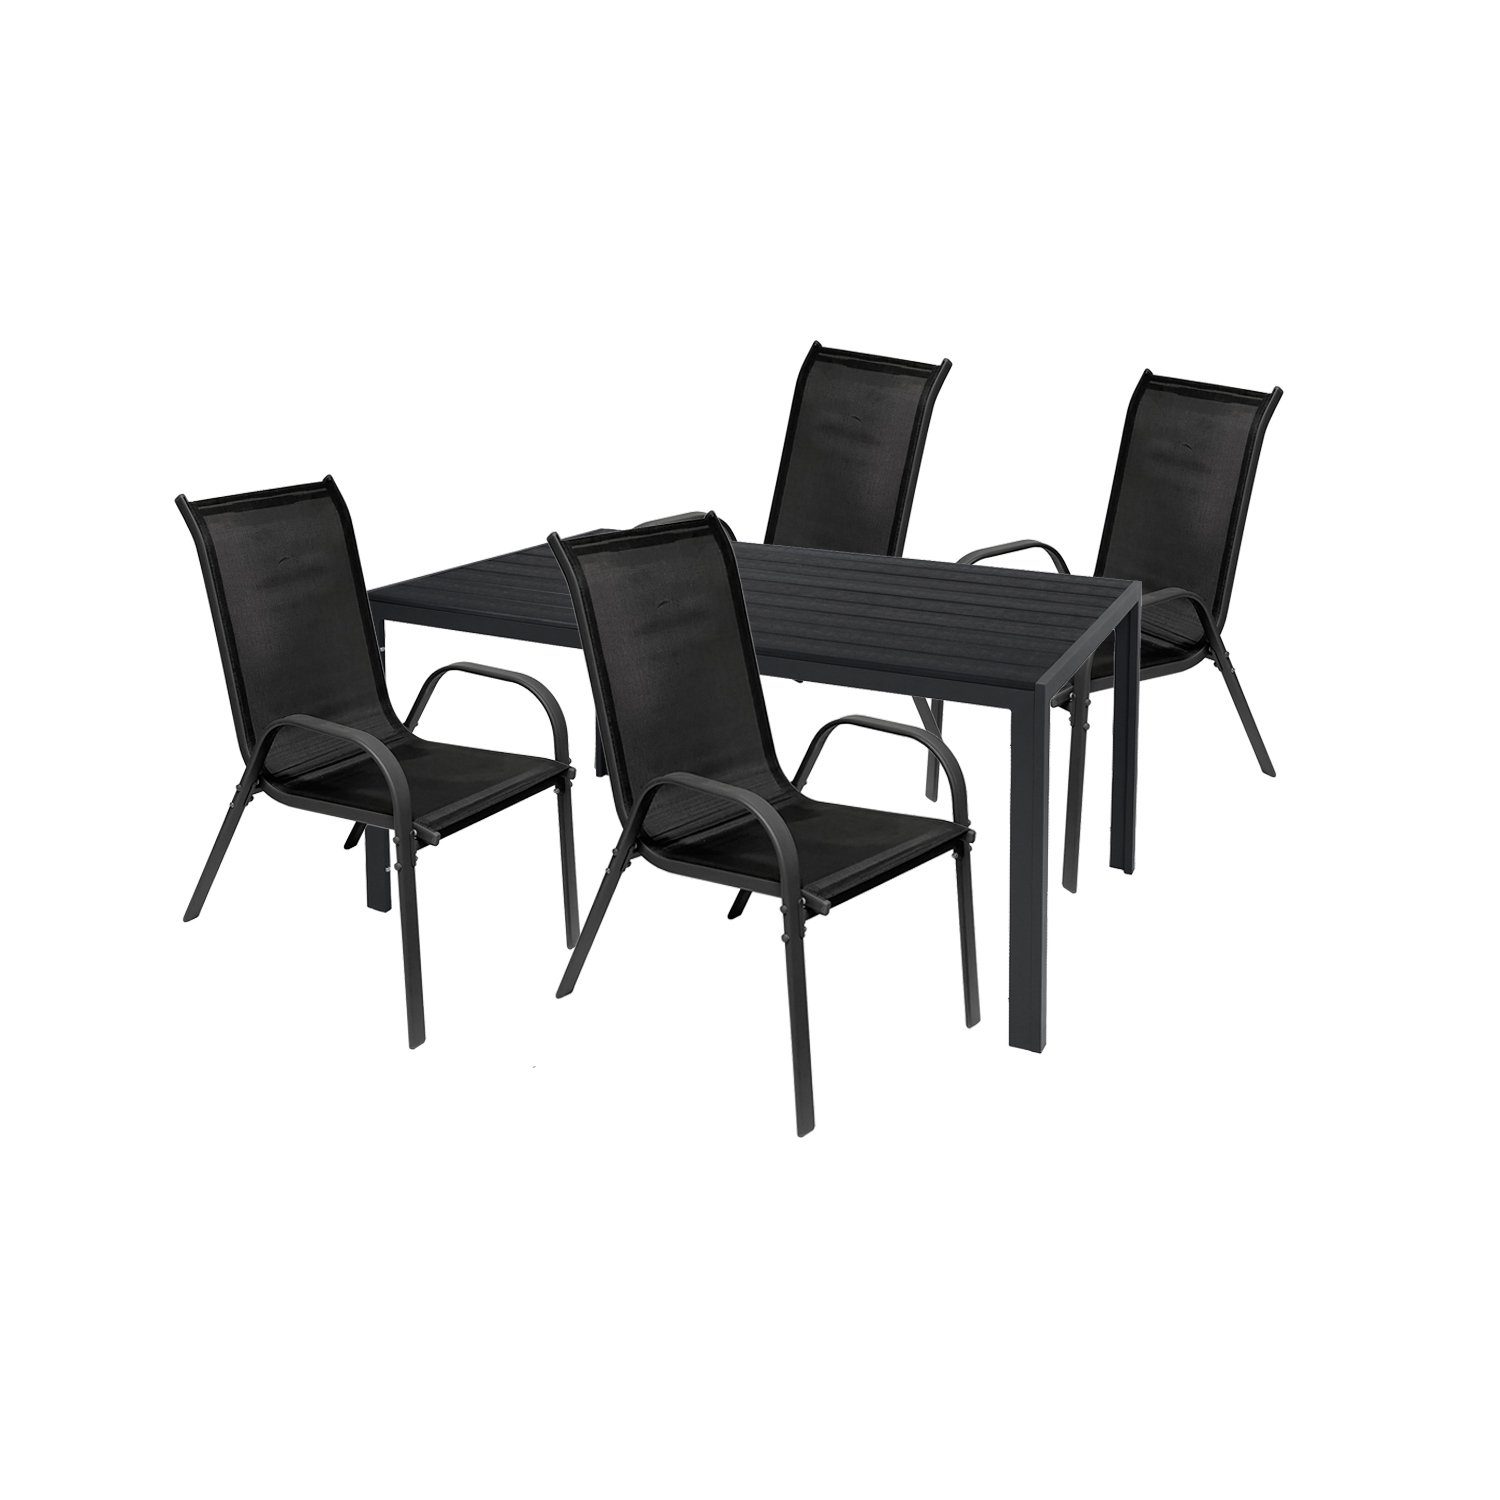 Mojawo 160x90cm Essgruppe 5tlg Sitzgruppe Gartenmöbel Essgruppe Garnitur Stuhl Tisch